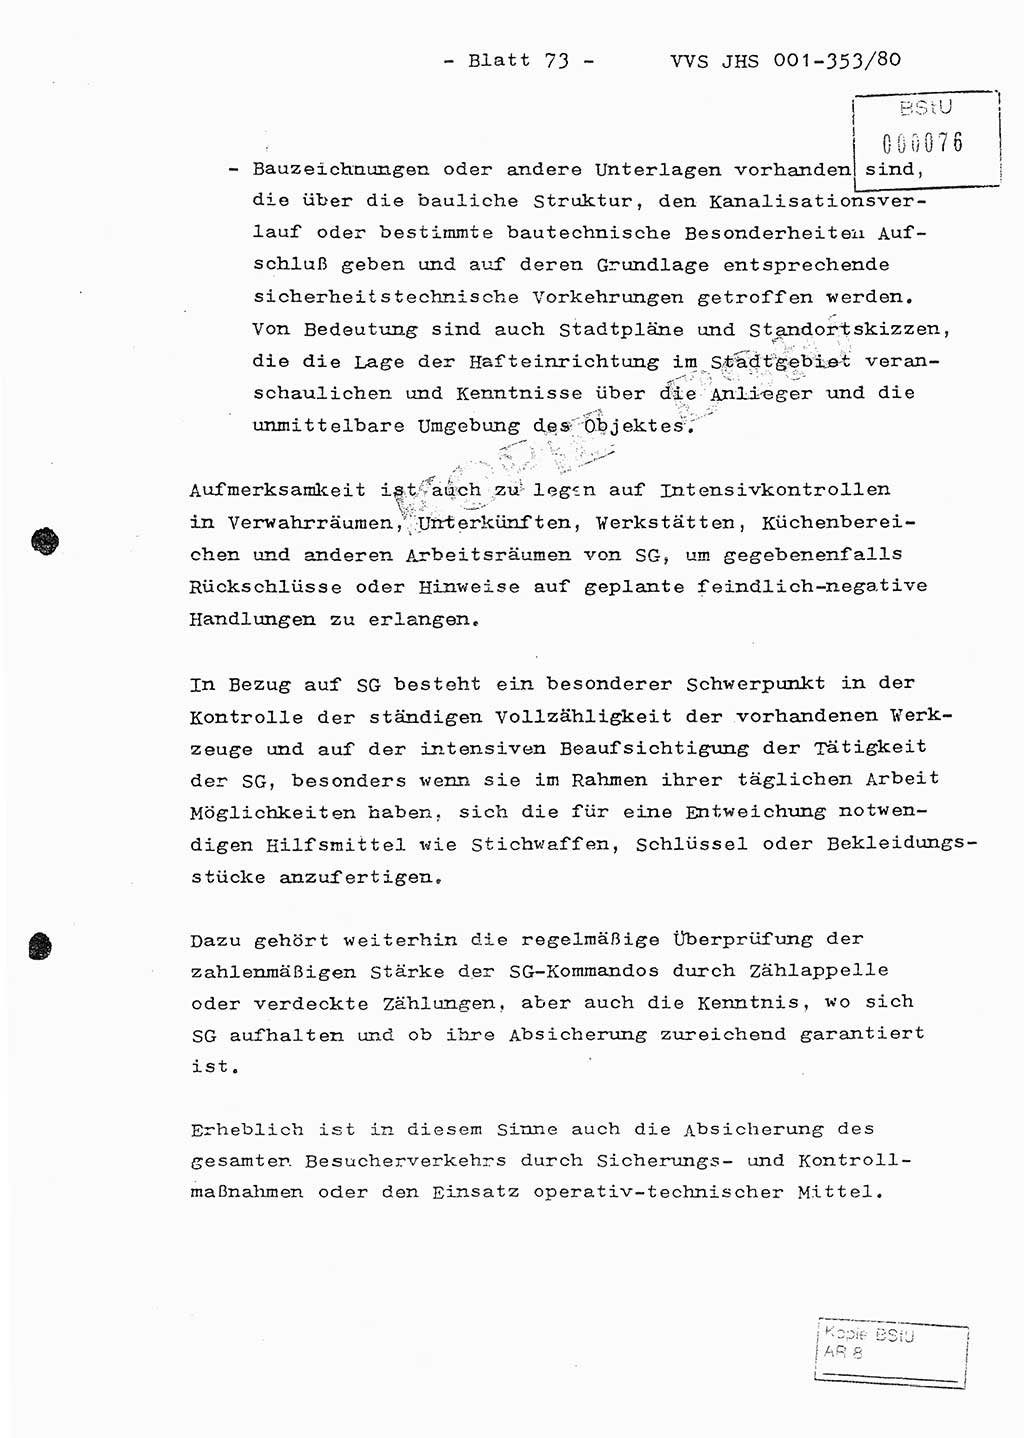 Diplomarbeit Hauptmann Joachim Klaumünzner (Abt. ⅩⅣ), Ministerium für Staatssicherheit (MfS) [Deutsche Demokratische Republik (DDR)], Juristische Hochschule (JHS), Vertrauliche Verschlußsache (VVS) o001-353/80, Potsdam 1980, Blatt 73 (Dipl.-Arb. MfS DDR JHS VVS o001-353/80 1980, Bl. 73)